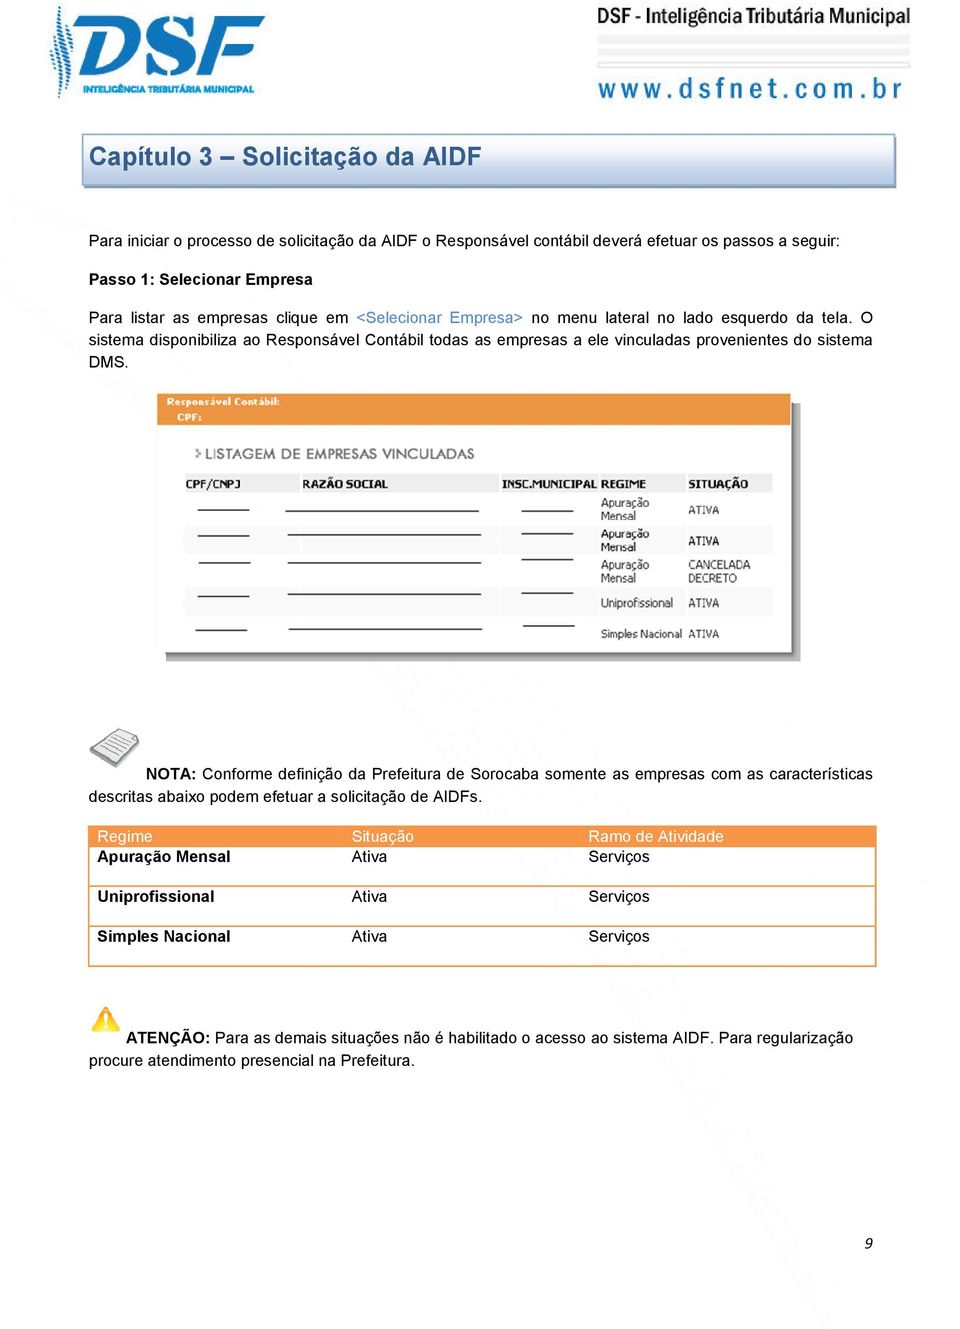 NOTA: Conforme definição da Prefeitura de Sorocaba somente as empresas com as características descritas abaixo podem efetuar a solicitação de AIDFs.